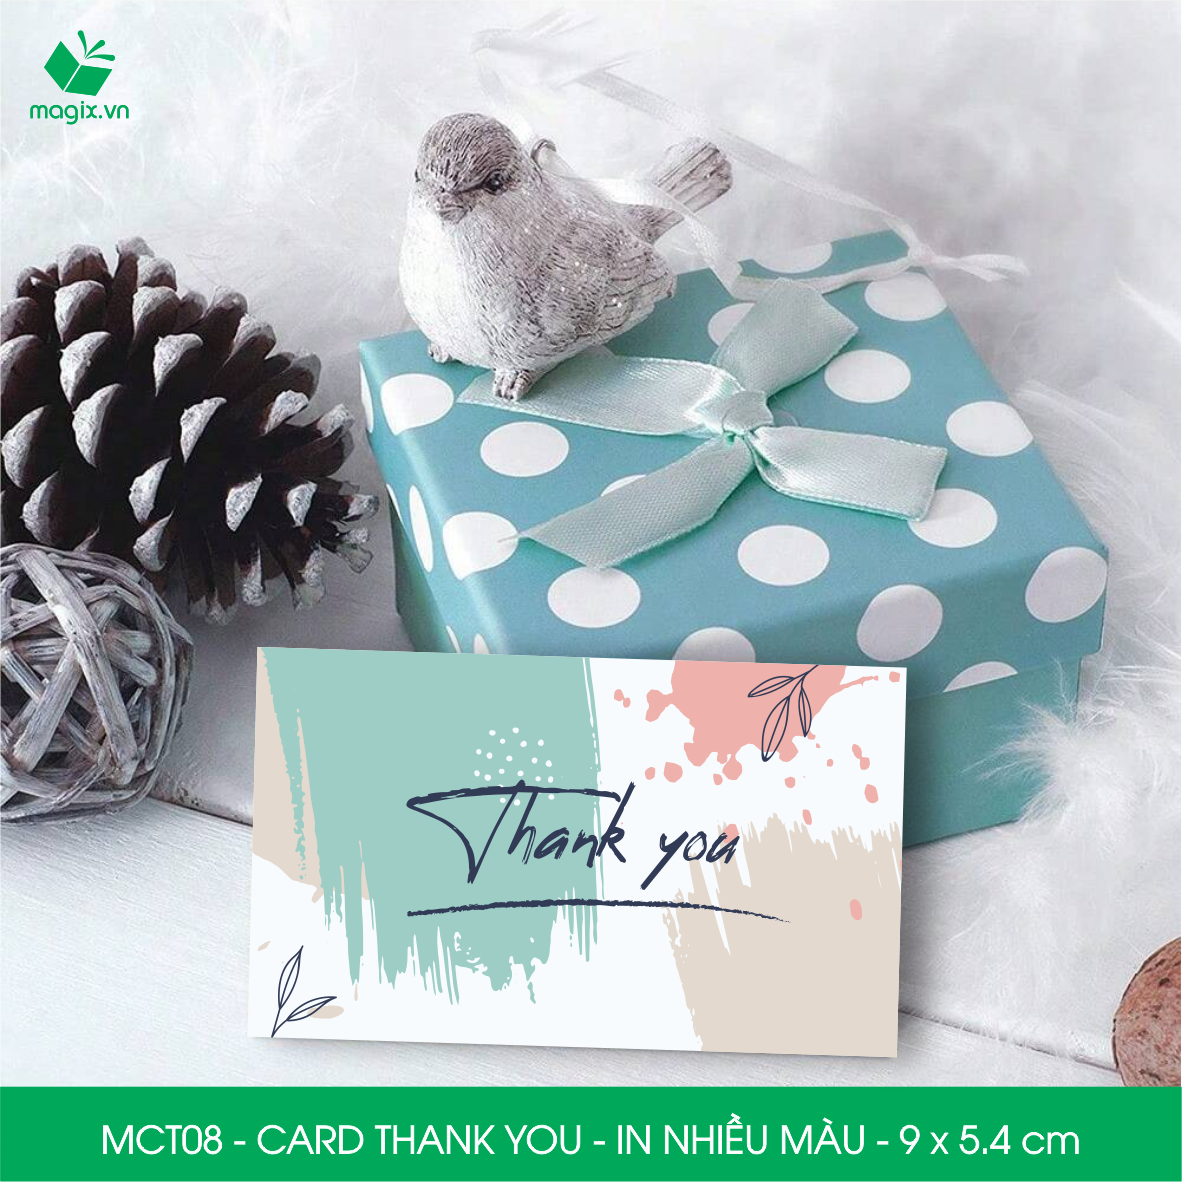 MCT08 - 9x5.4 cm - 1000 Card Thank you, Thiệp cảm ơn khách hàng, card cám ơn cứng cáp sang trọng